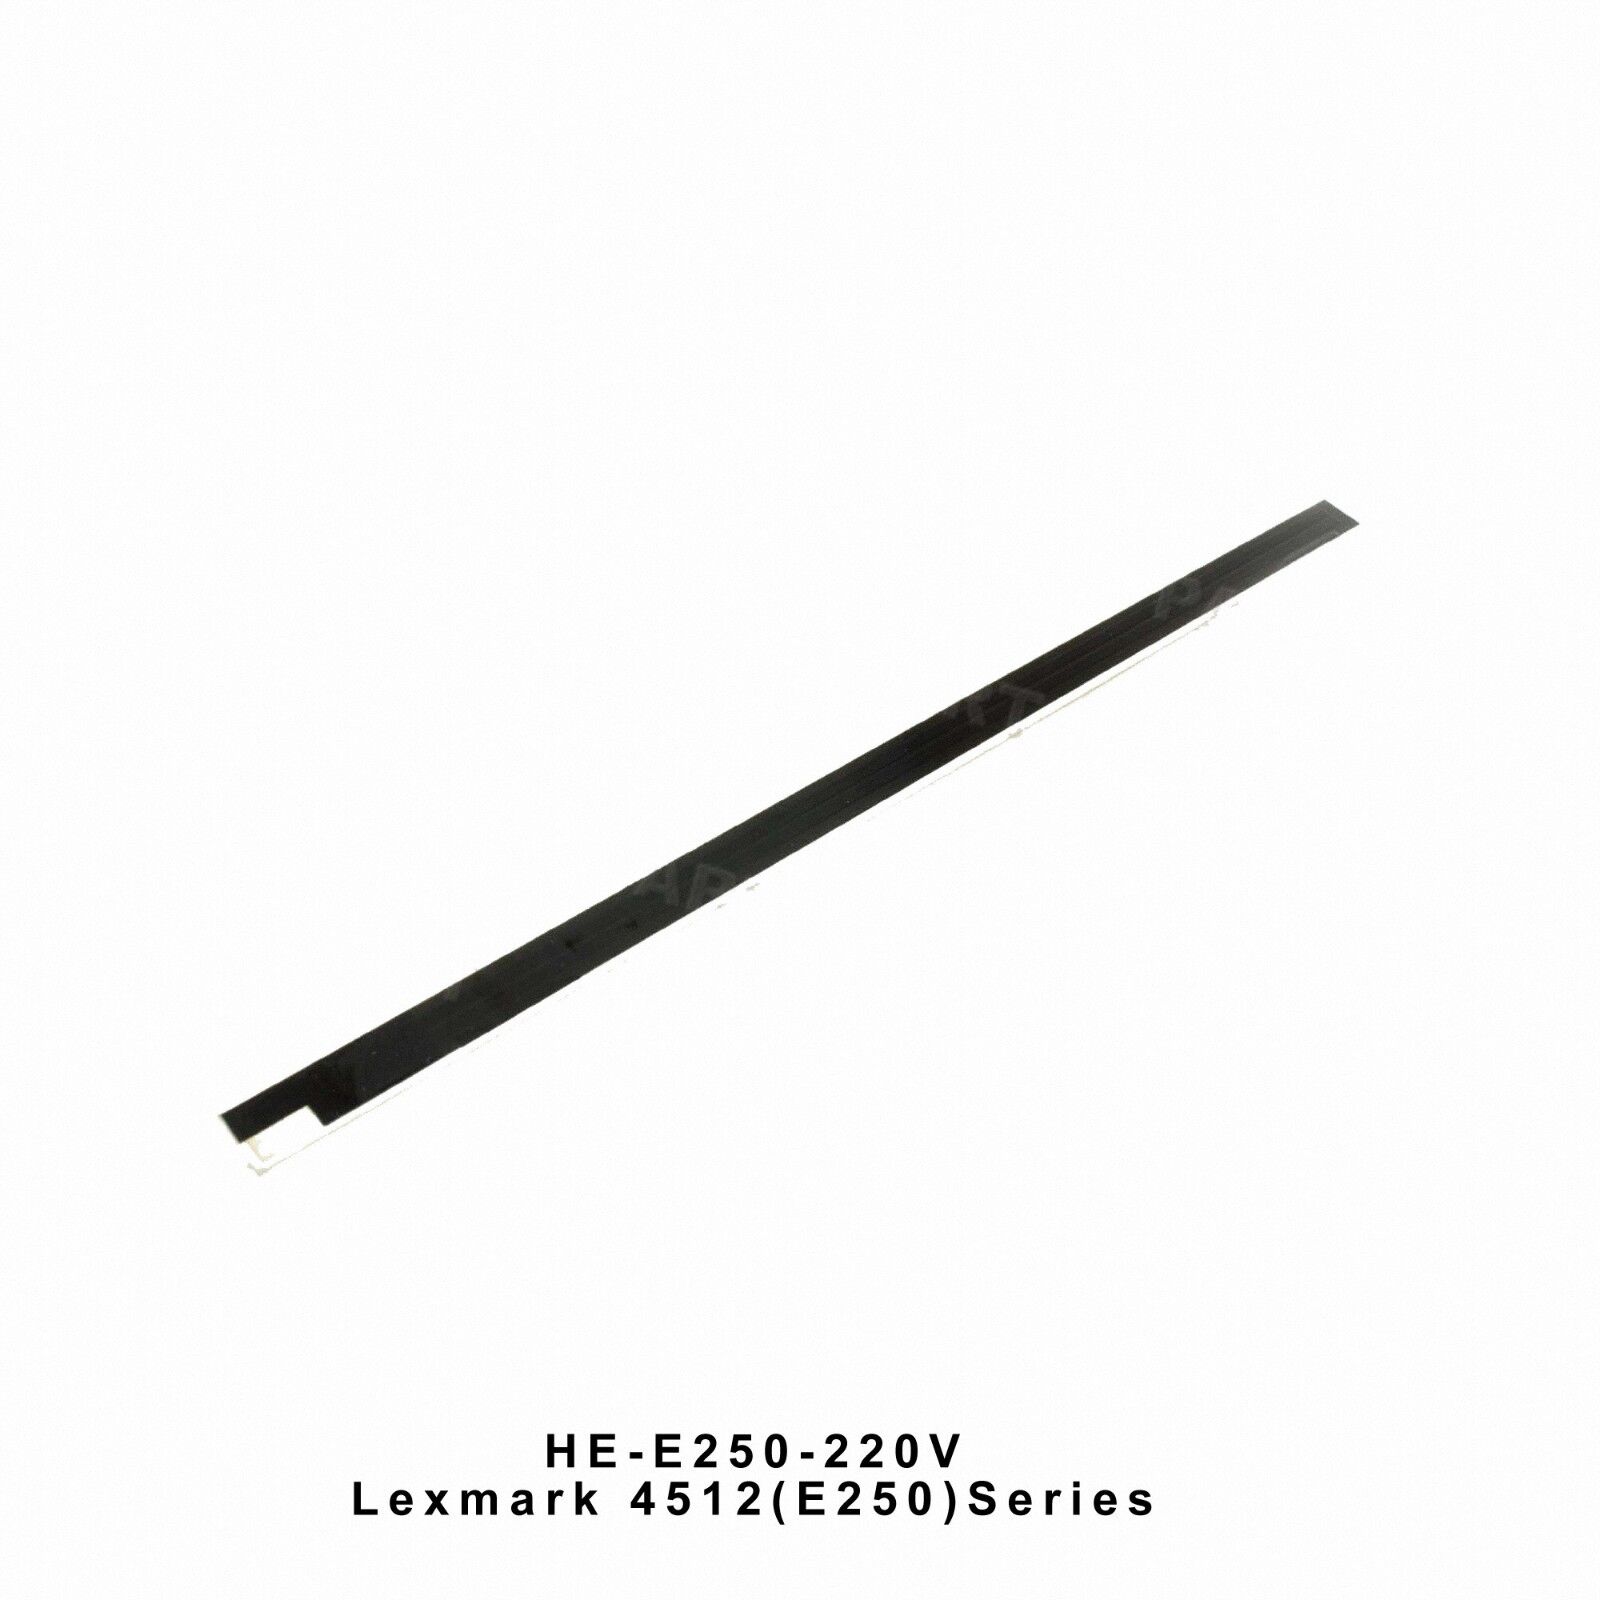 Lexmark 4512 E250 4513 260 Fuser Heating Element (220V) HE-E250-220V OEM Quality